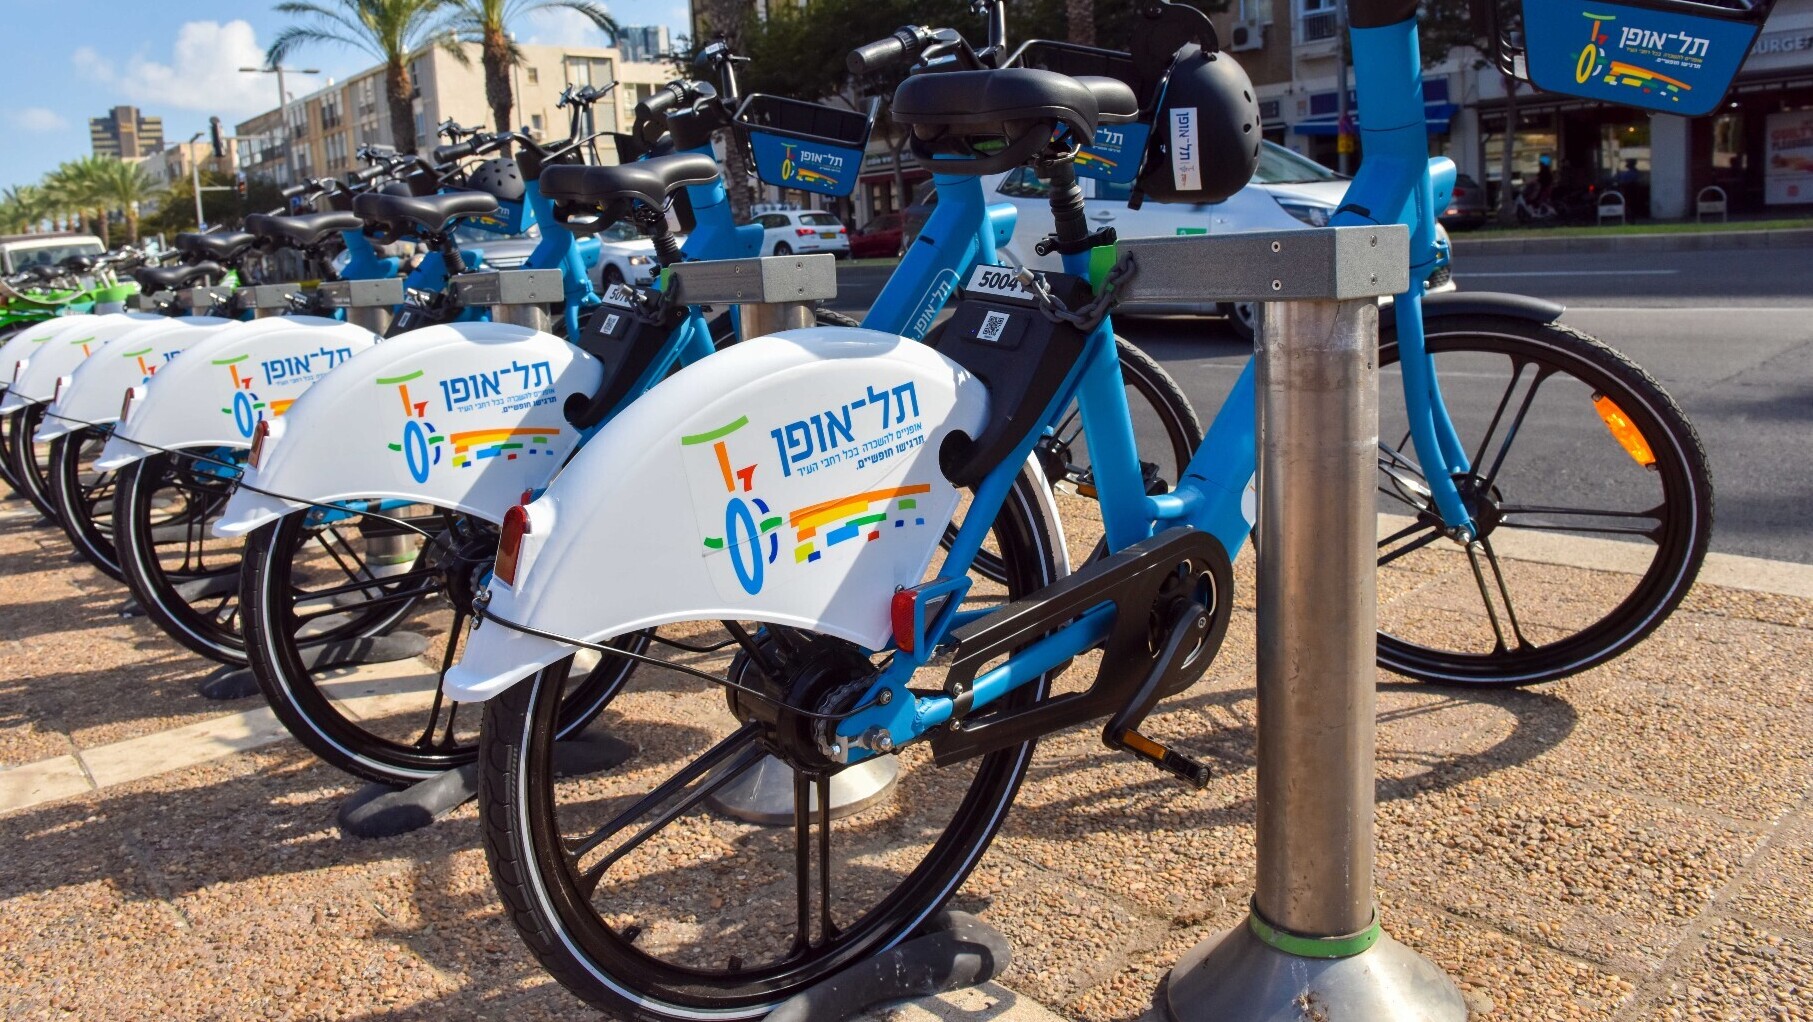 תל אופן אופניים חשמליים תל אביב